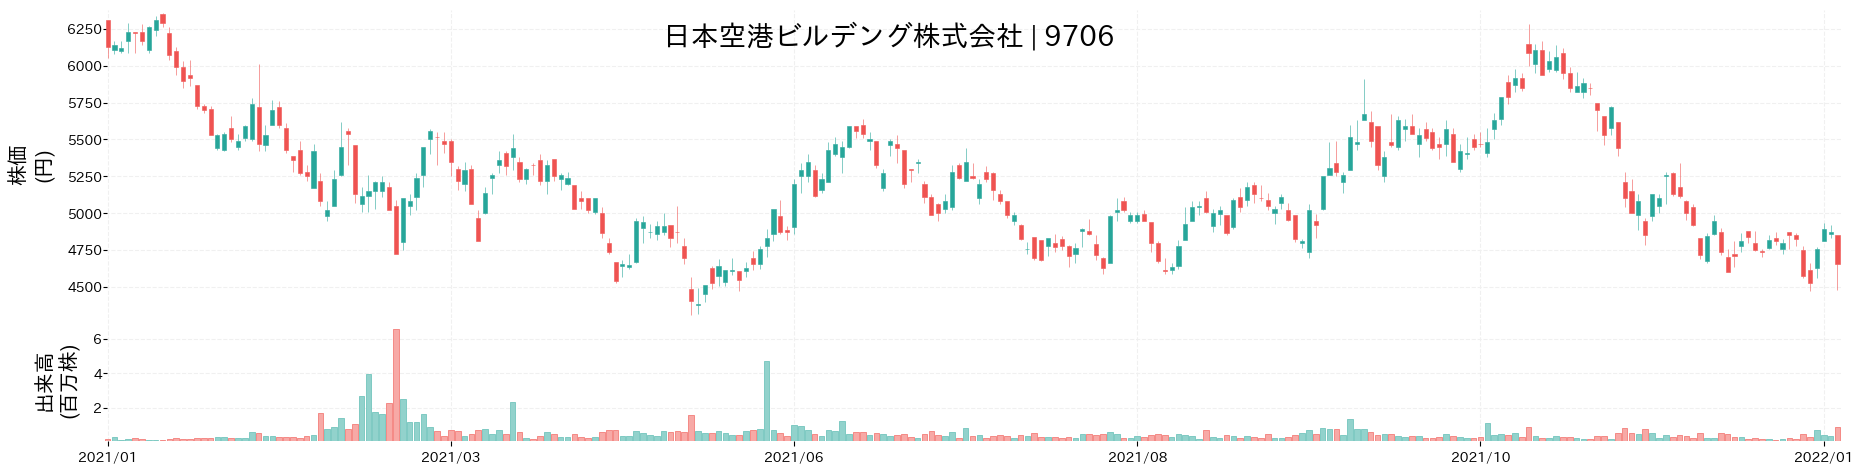 日本空港ビルデングの株価推移(2021)